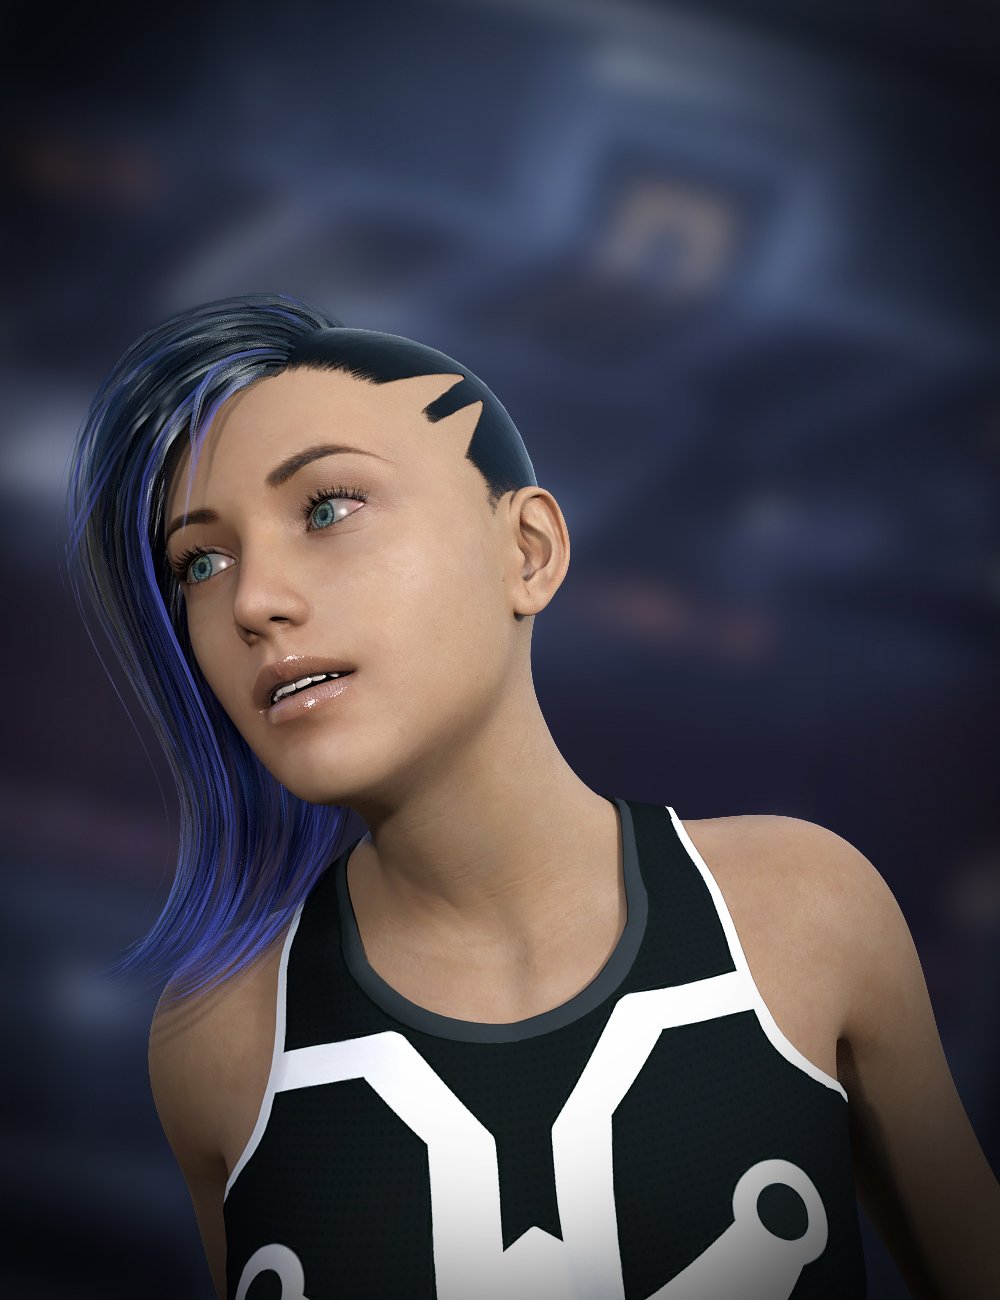 Cyberpunk Hair for Genesis 8 Female by: , 3D Models by Daz 3D